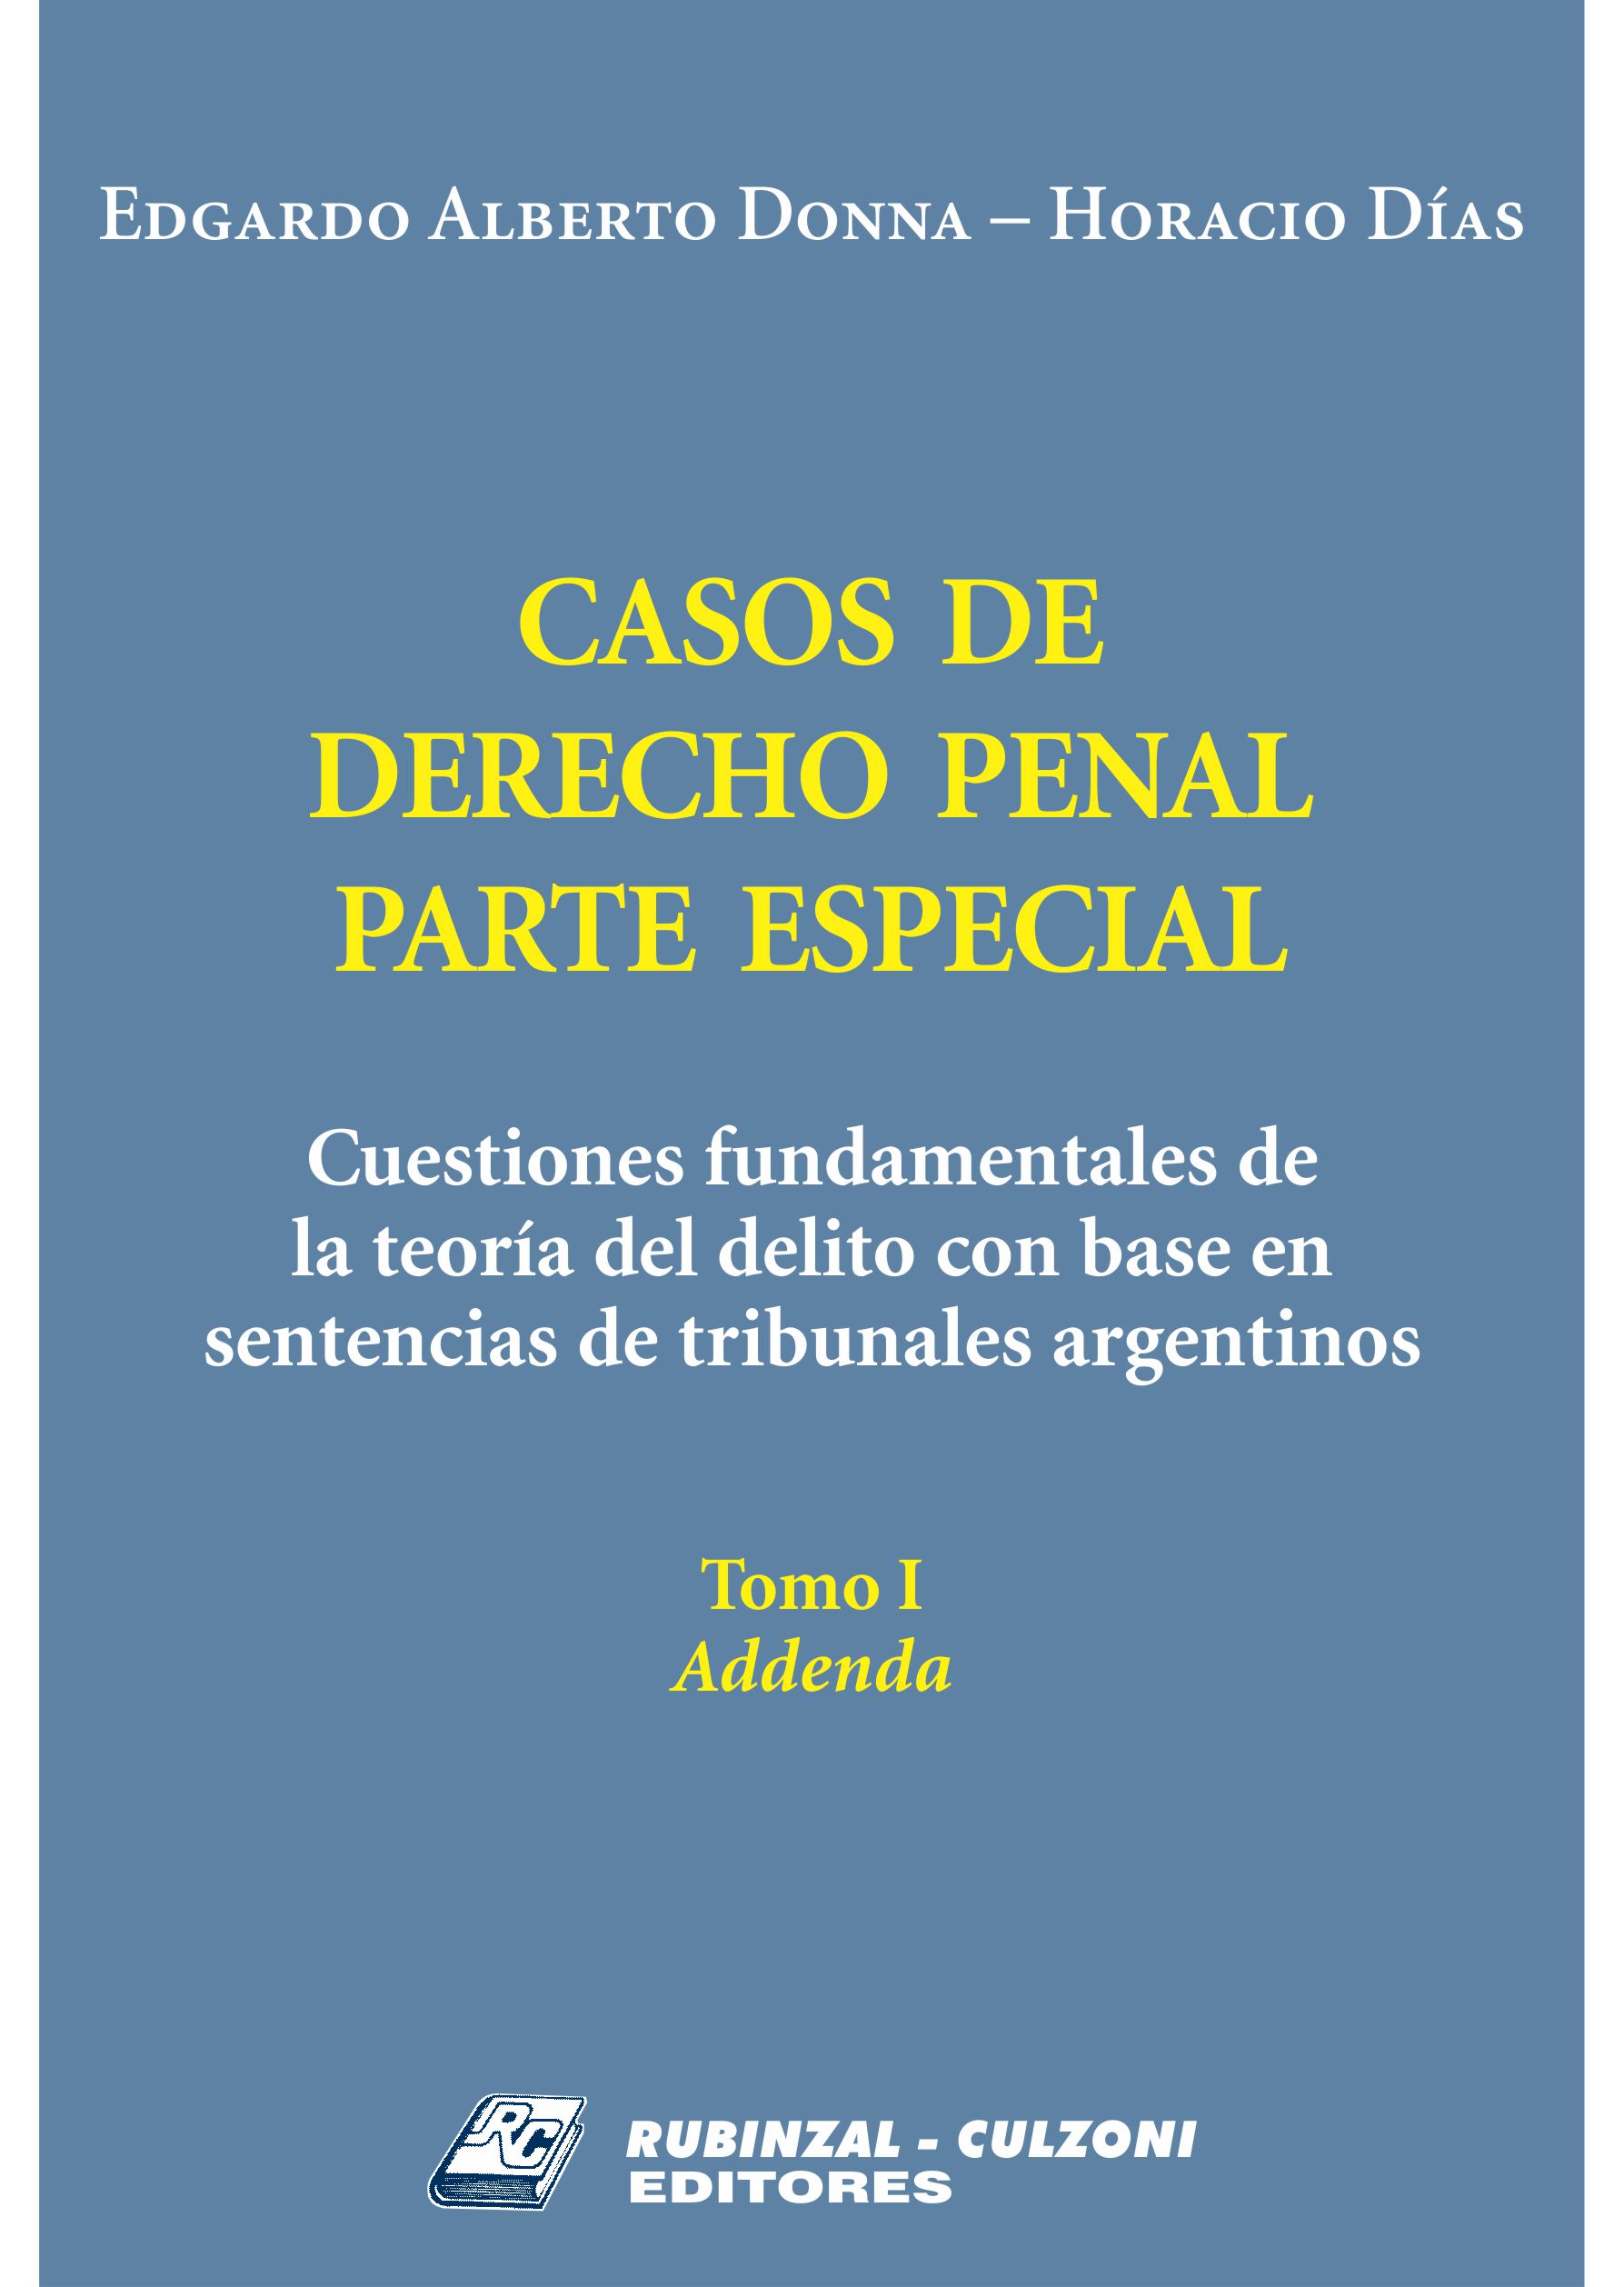 Casos de Derecho Penal Parte Especial. Cuestiones fundamentales de la teoría del delito con base en sentencias de tribunales argentinos - Tomo I. Addenda